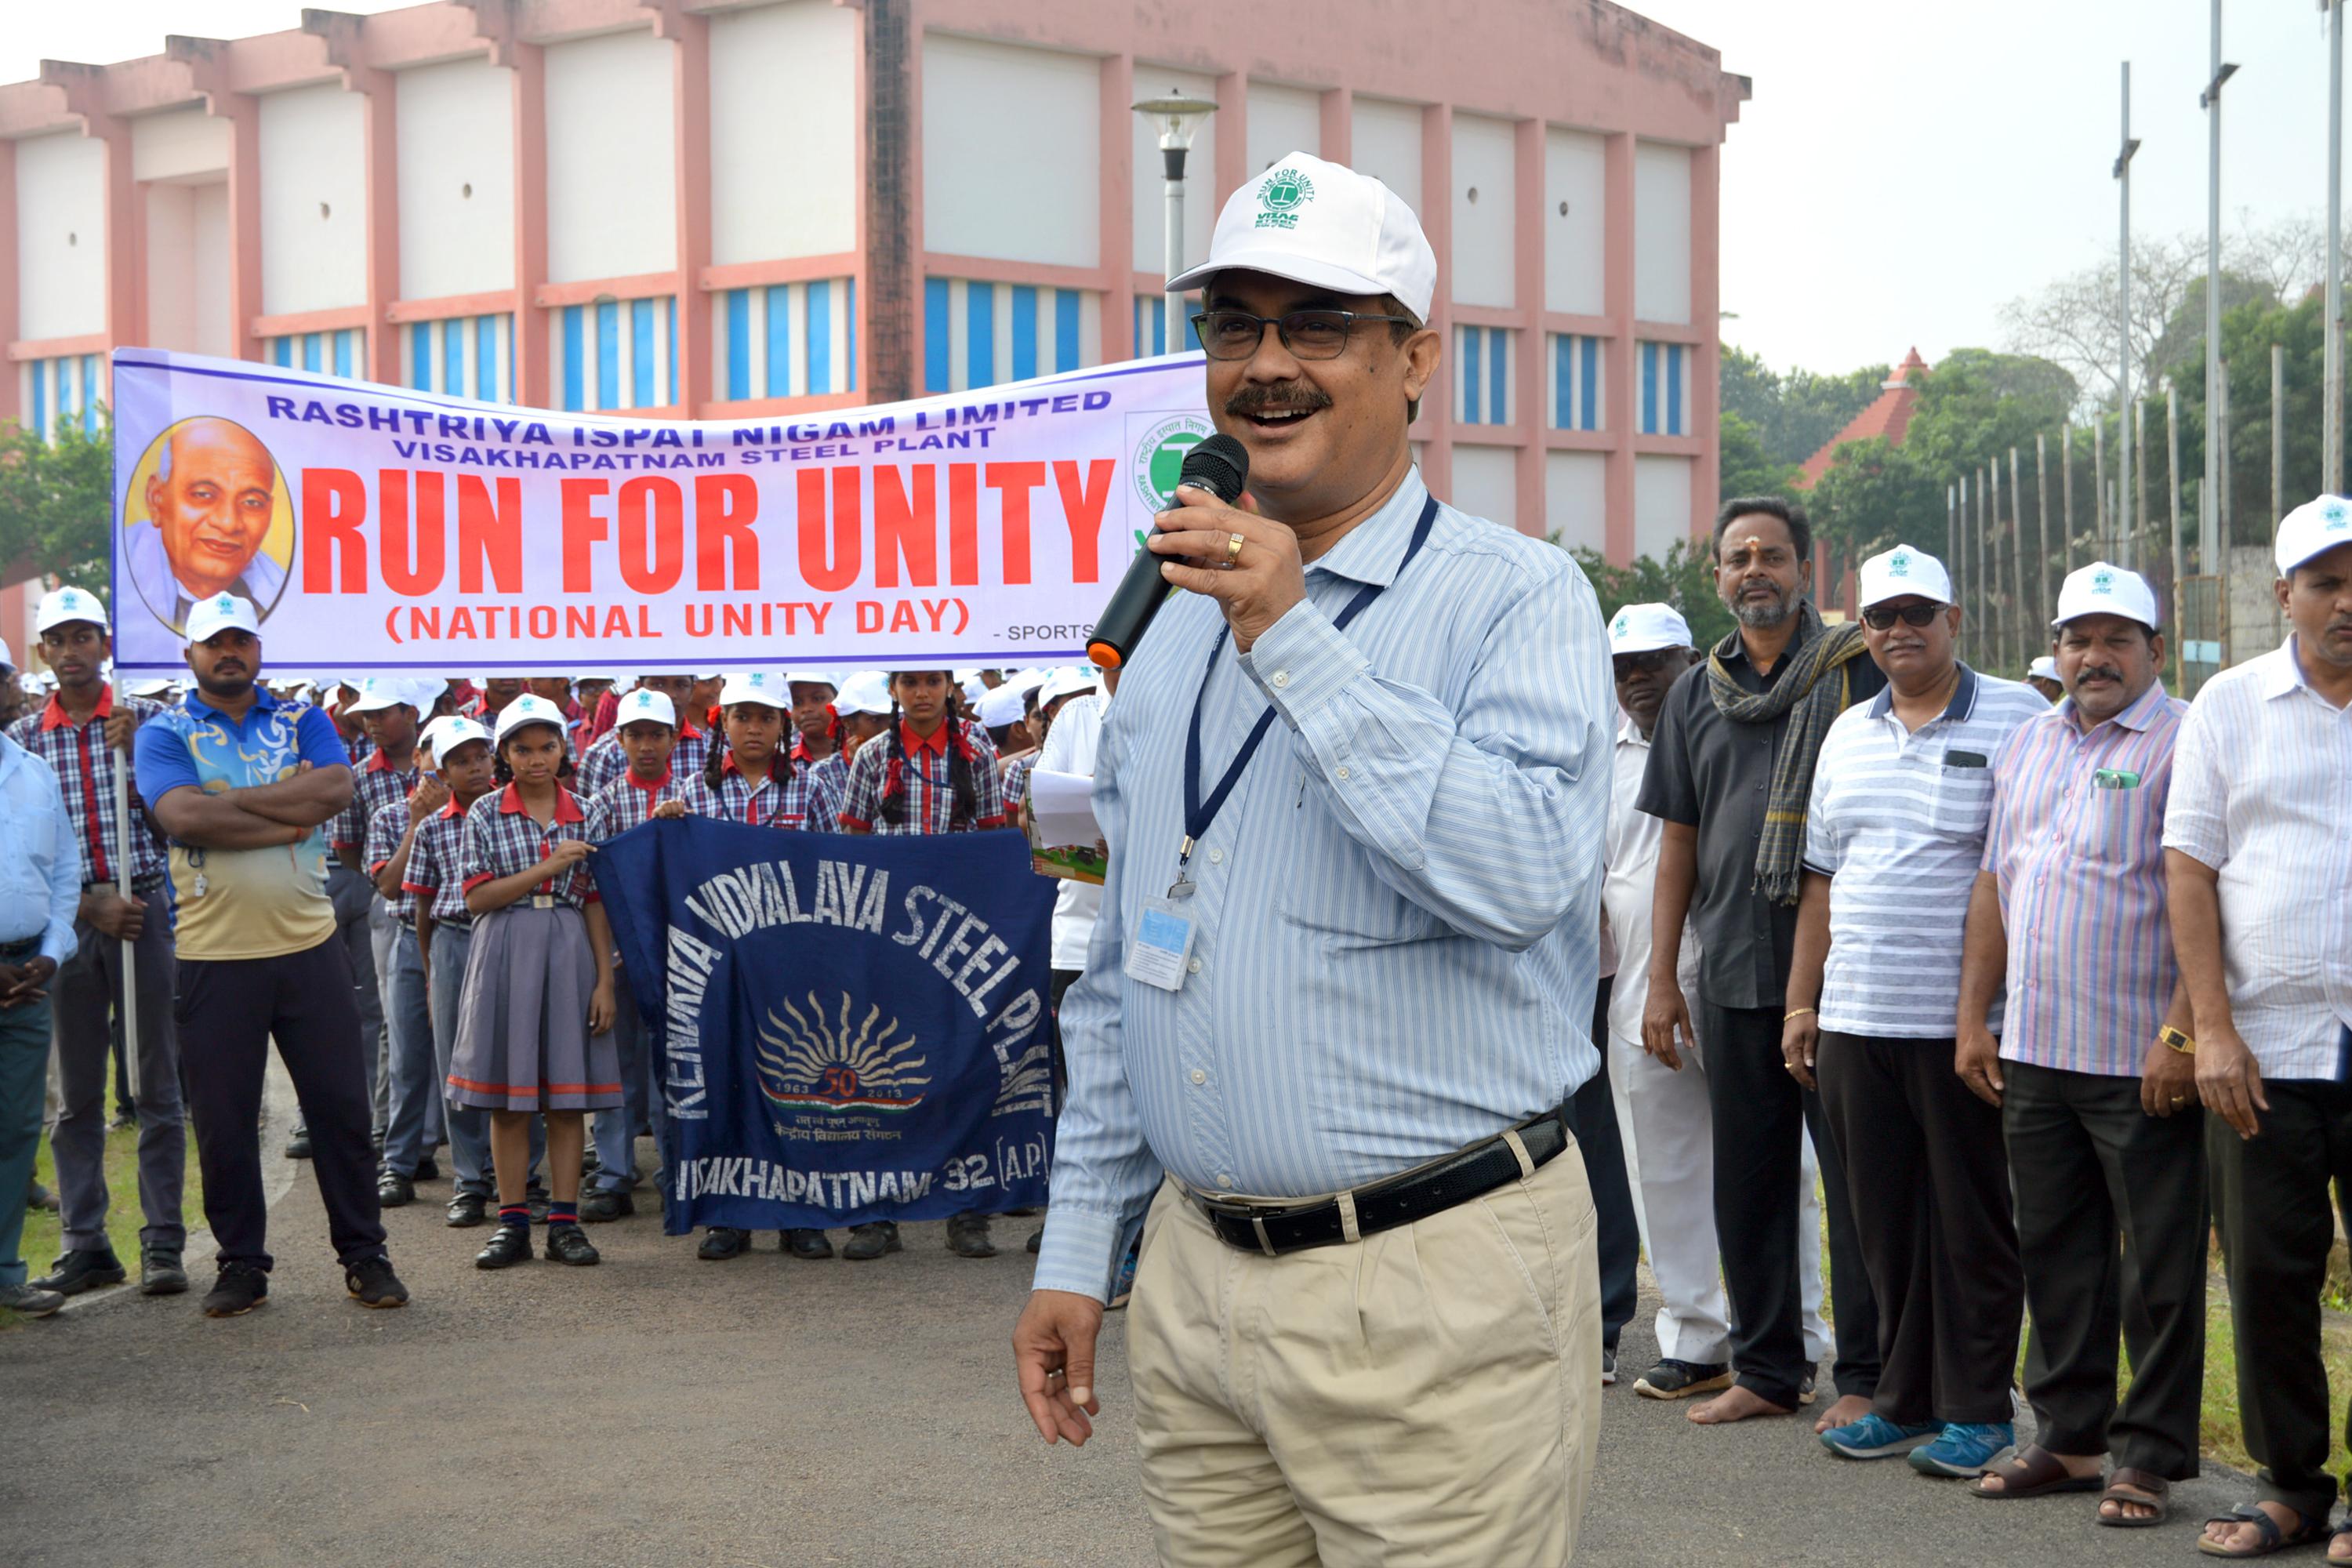 Run for Unity organized in Ukkunagaram